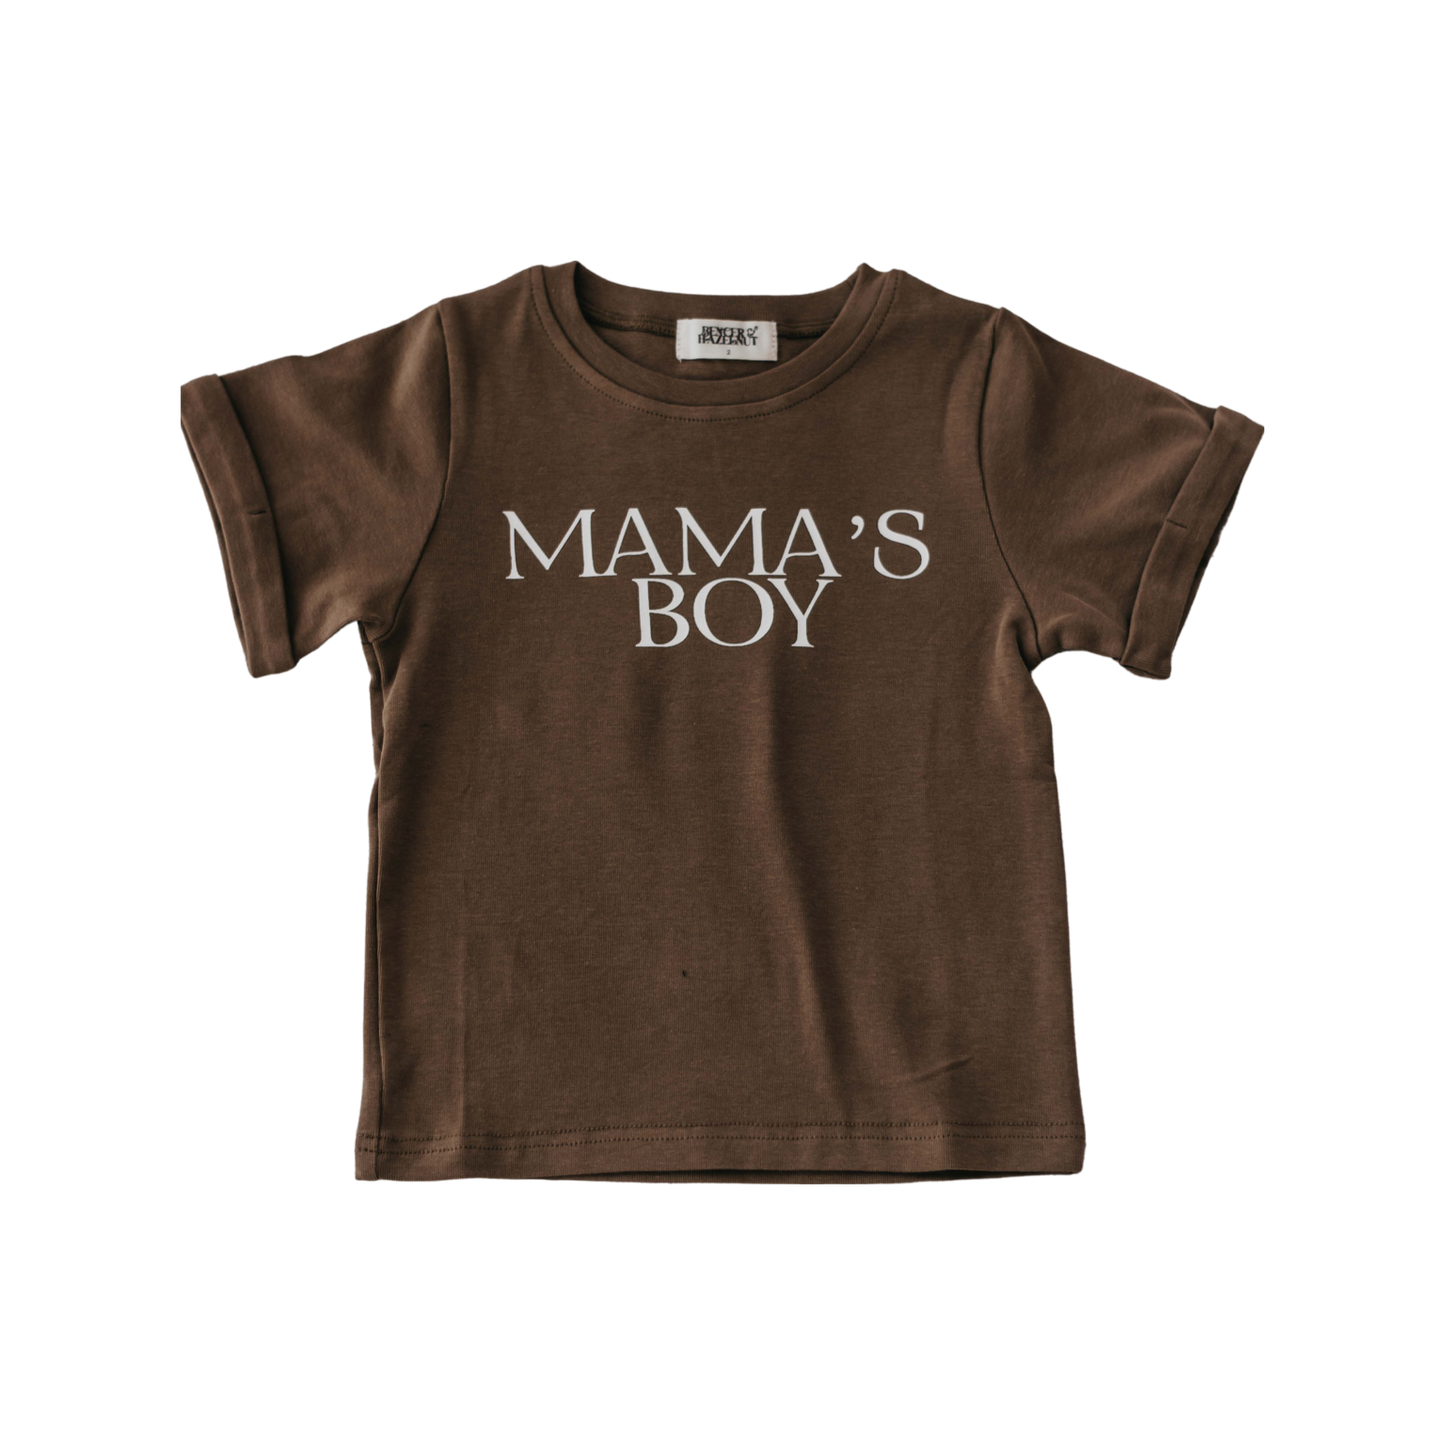 Mamas Boy Bodysuit/Tee